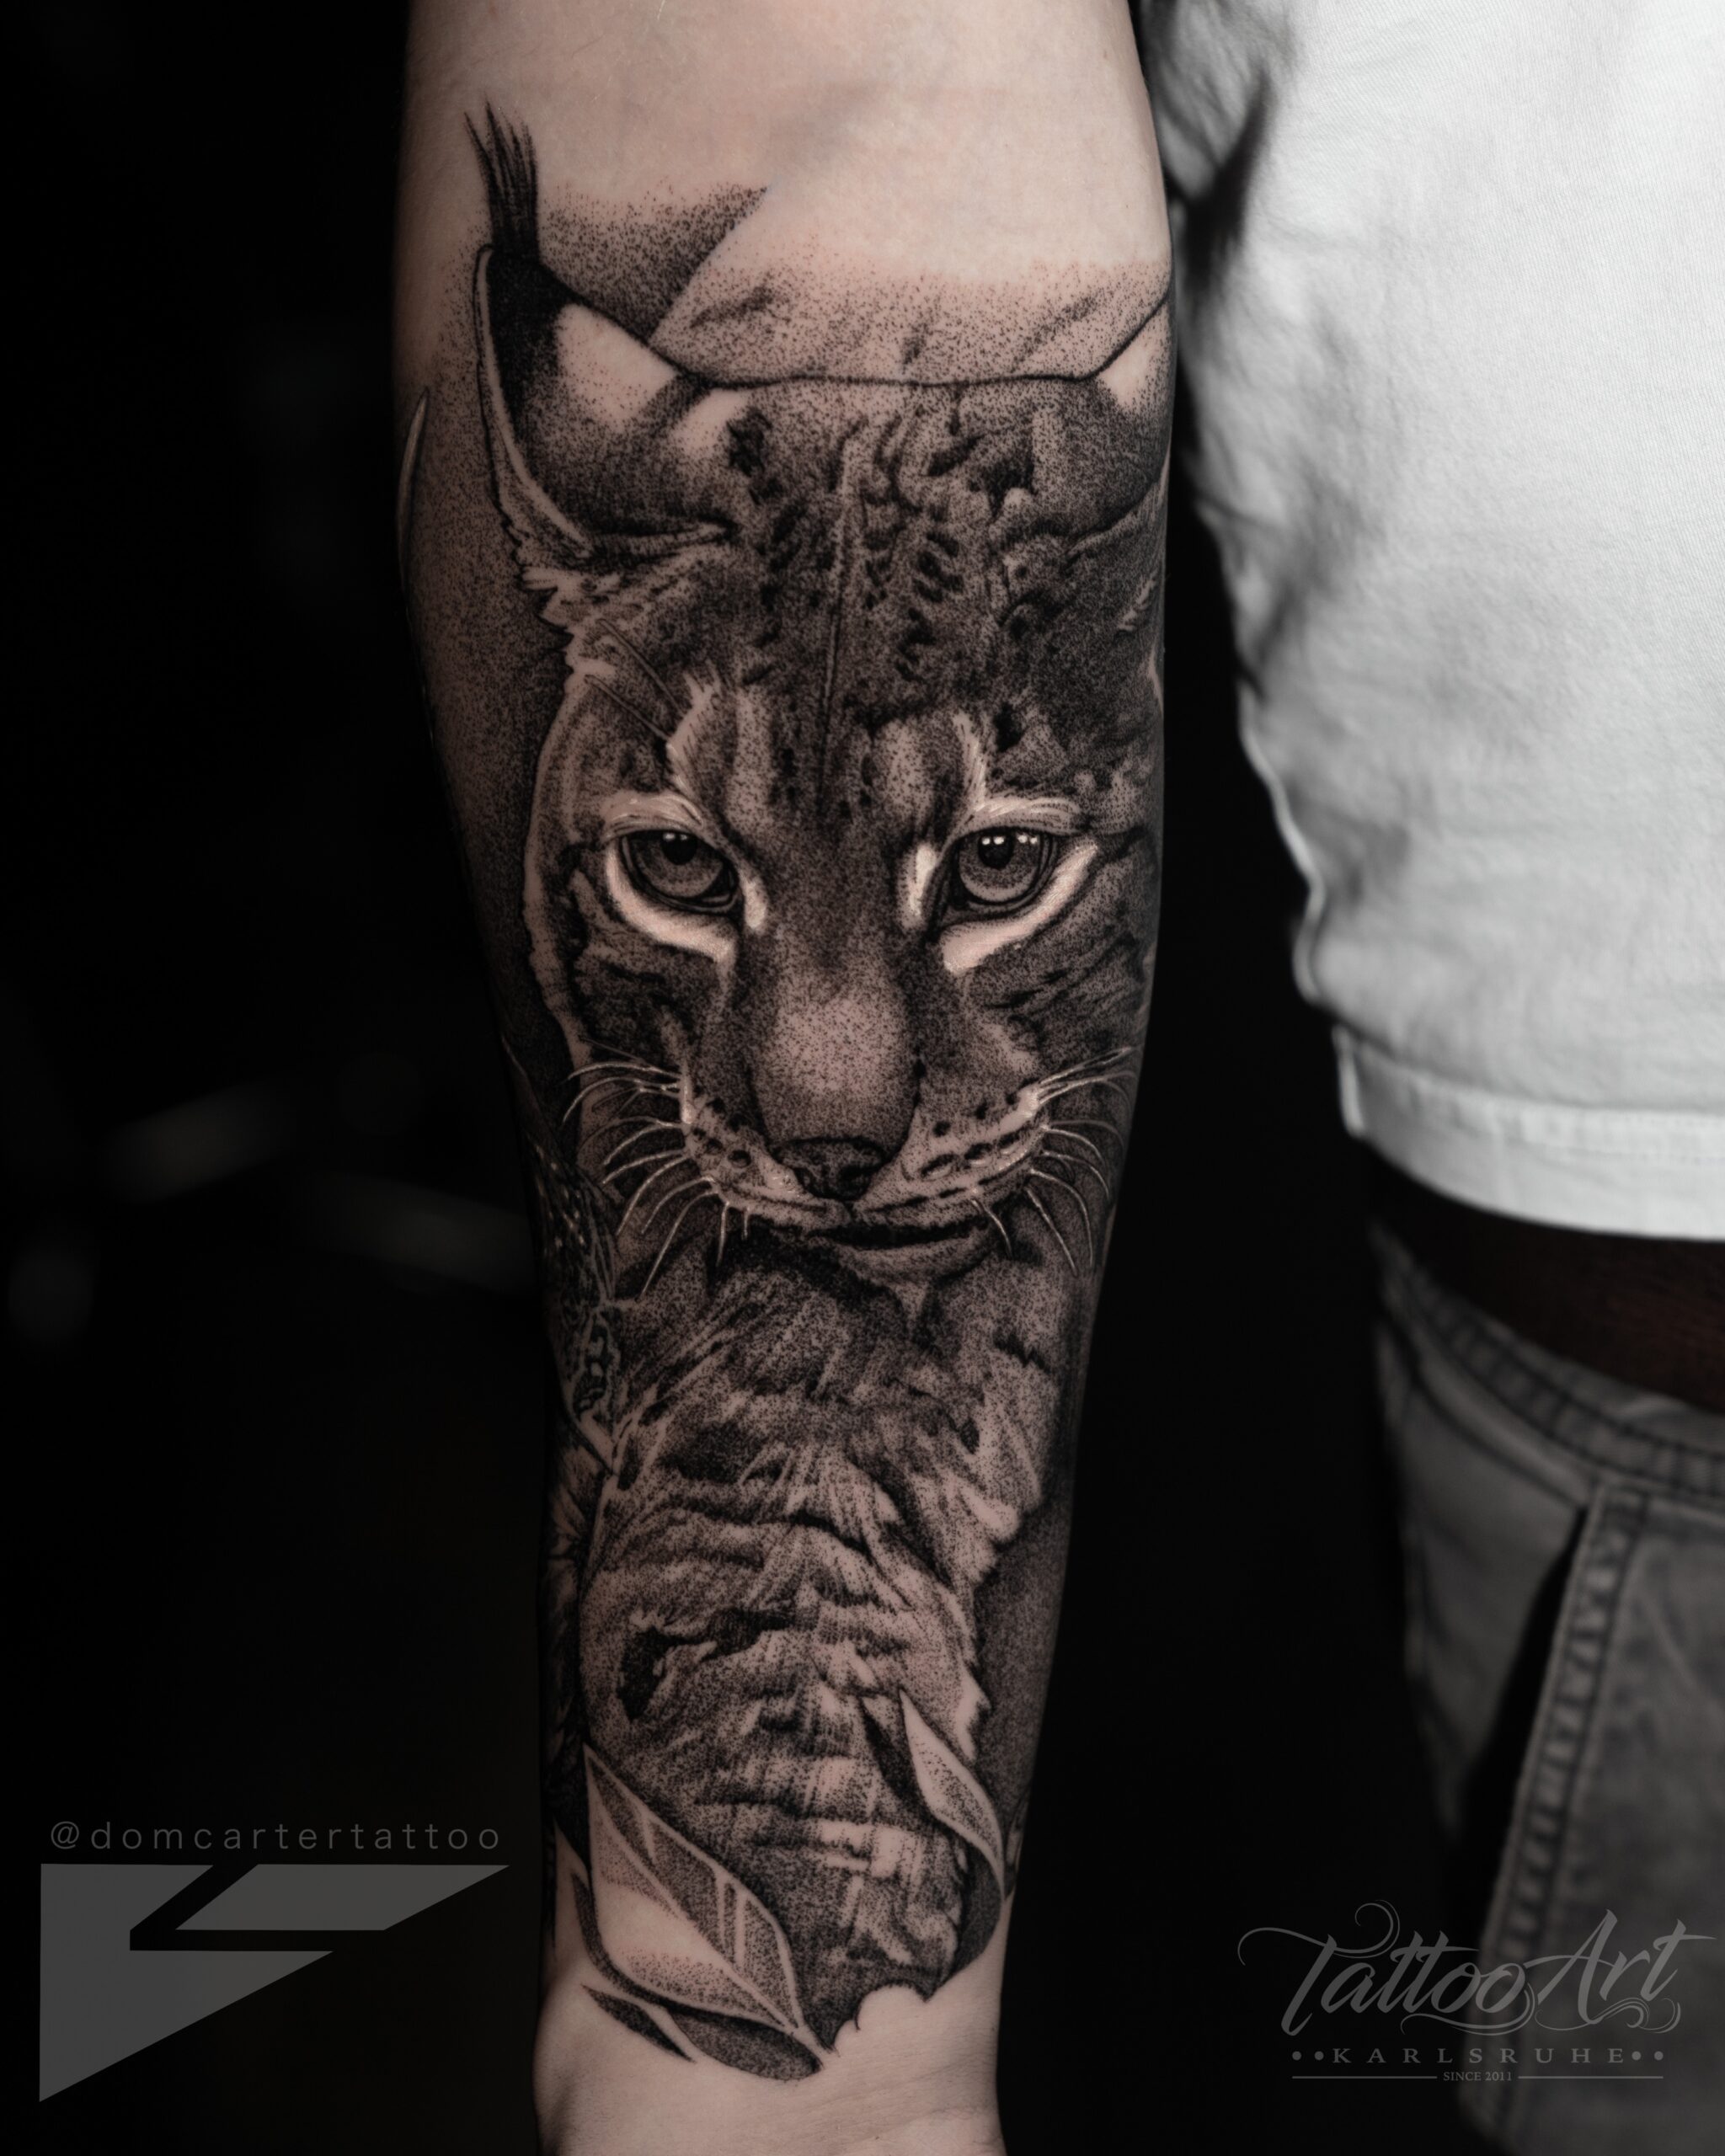 Tattoo Art (16)